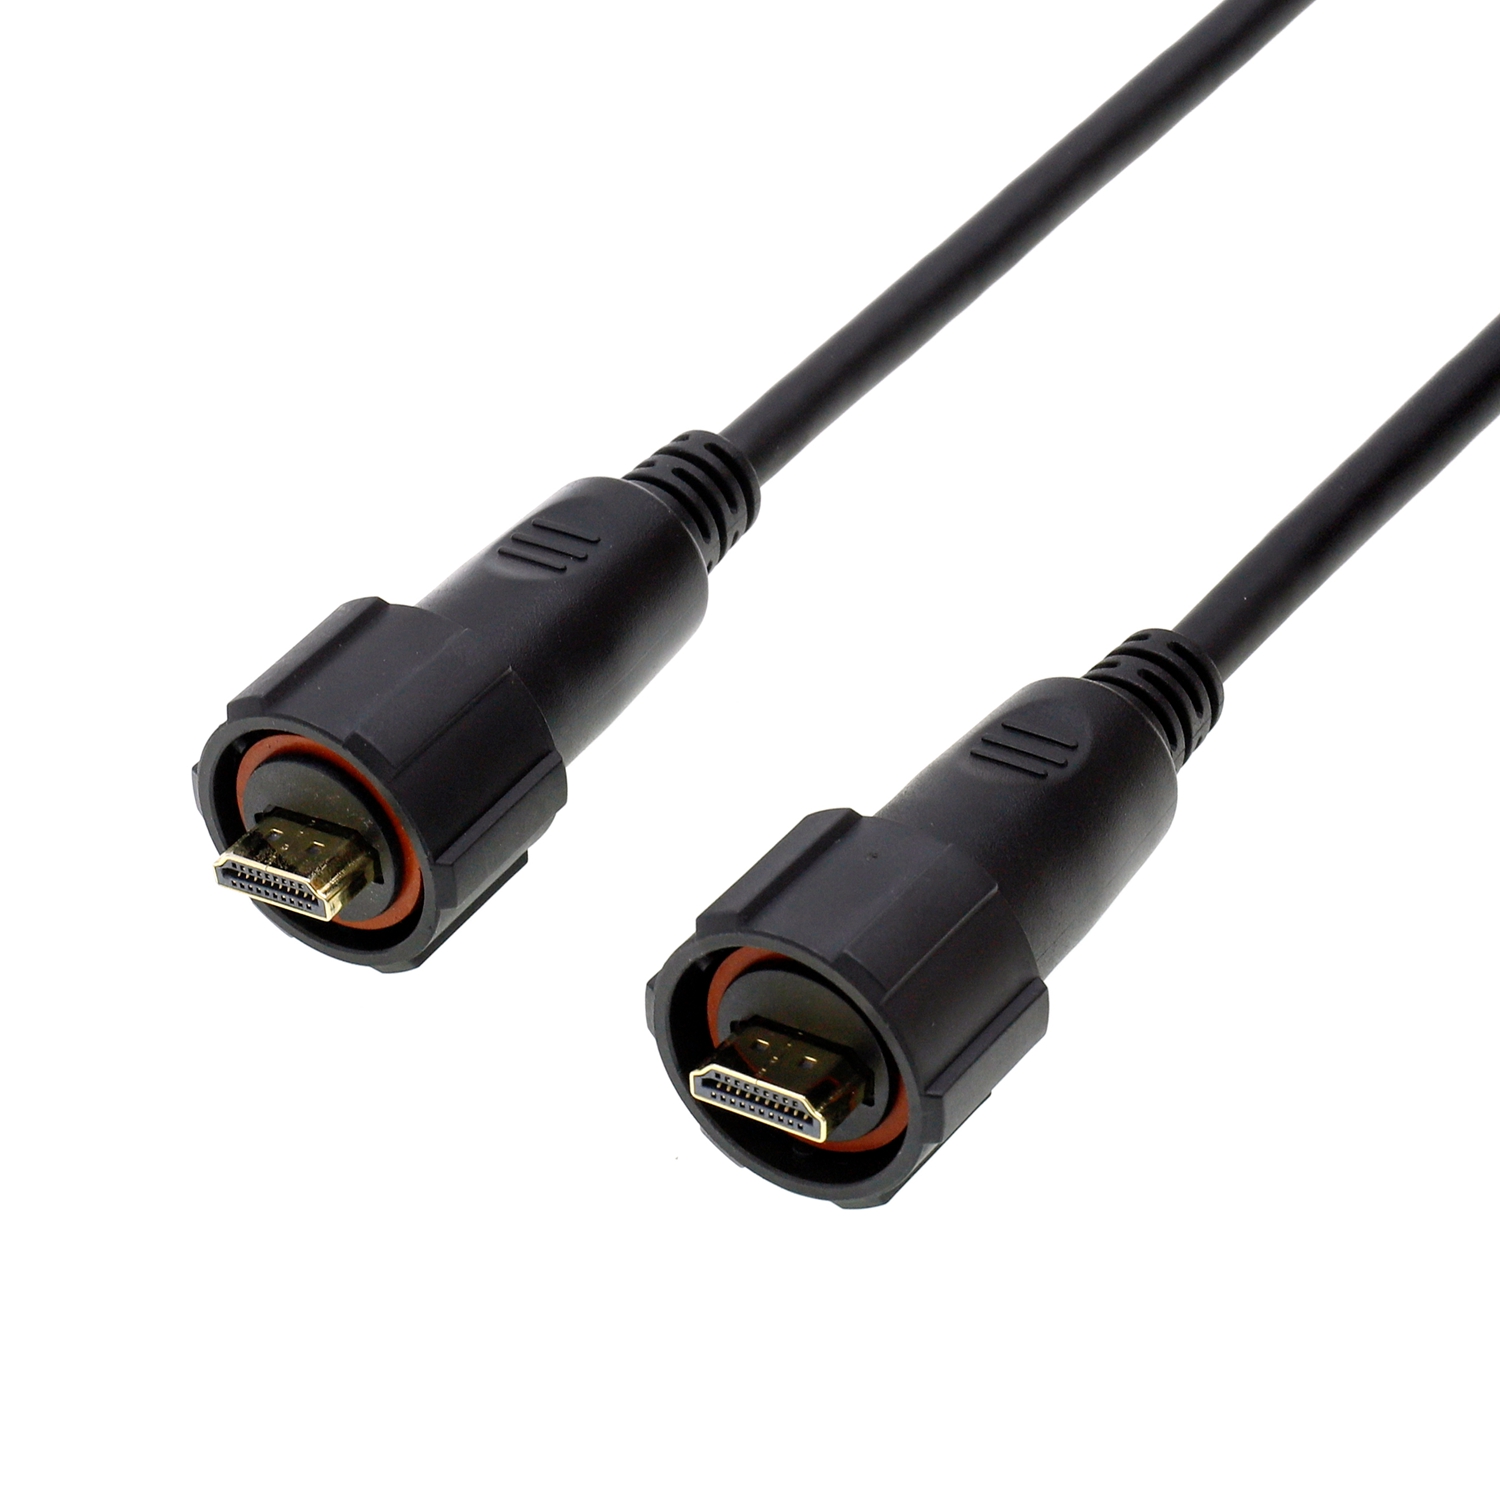 HDMI PVC Waterproof HDV UHD Communication Harness ng kable